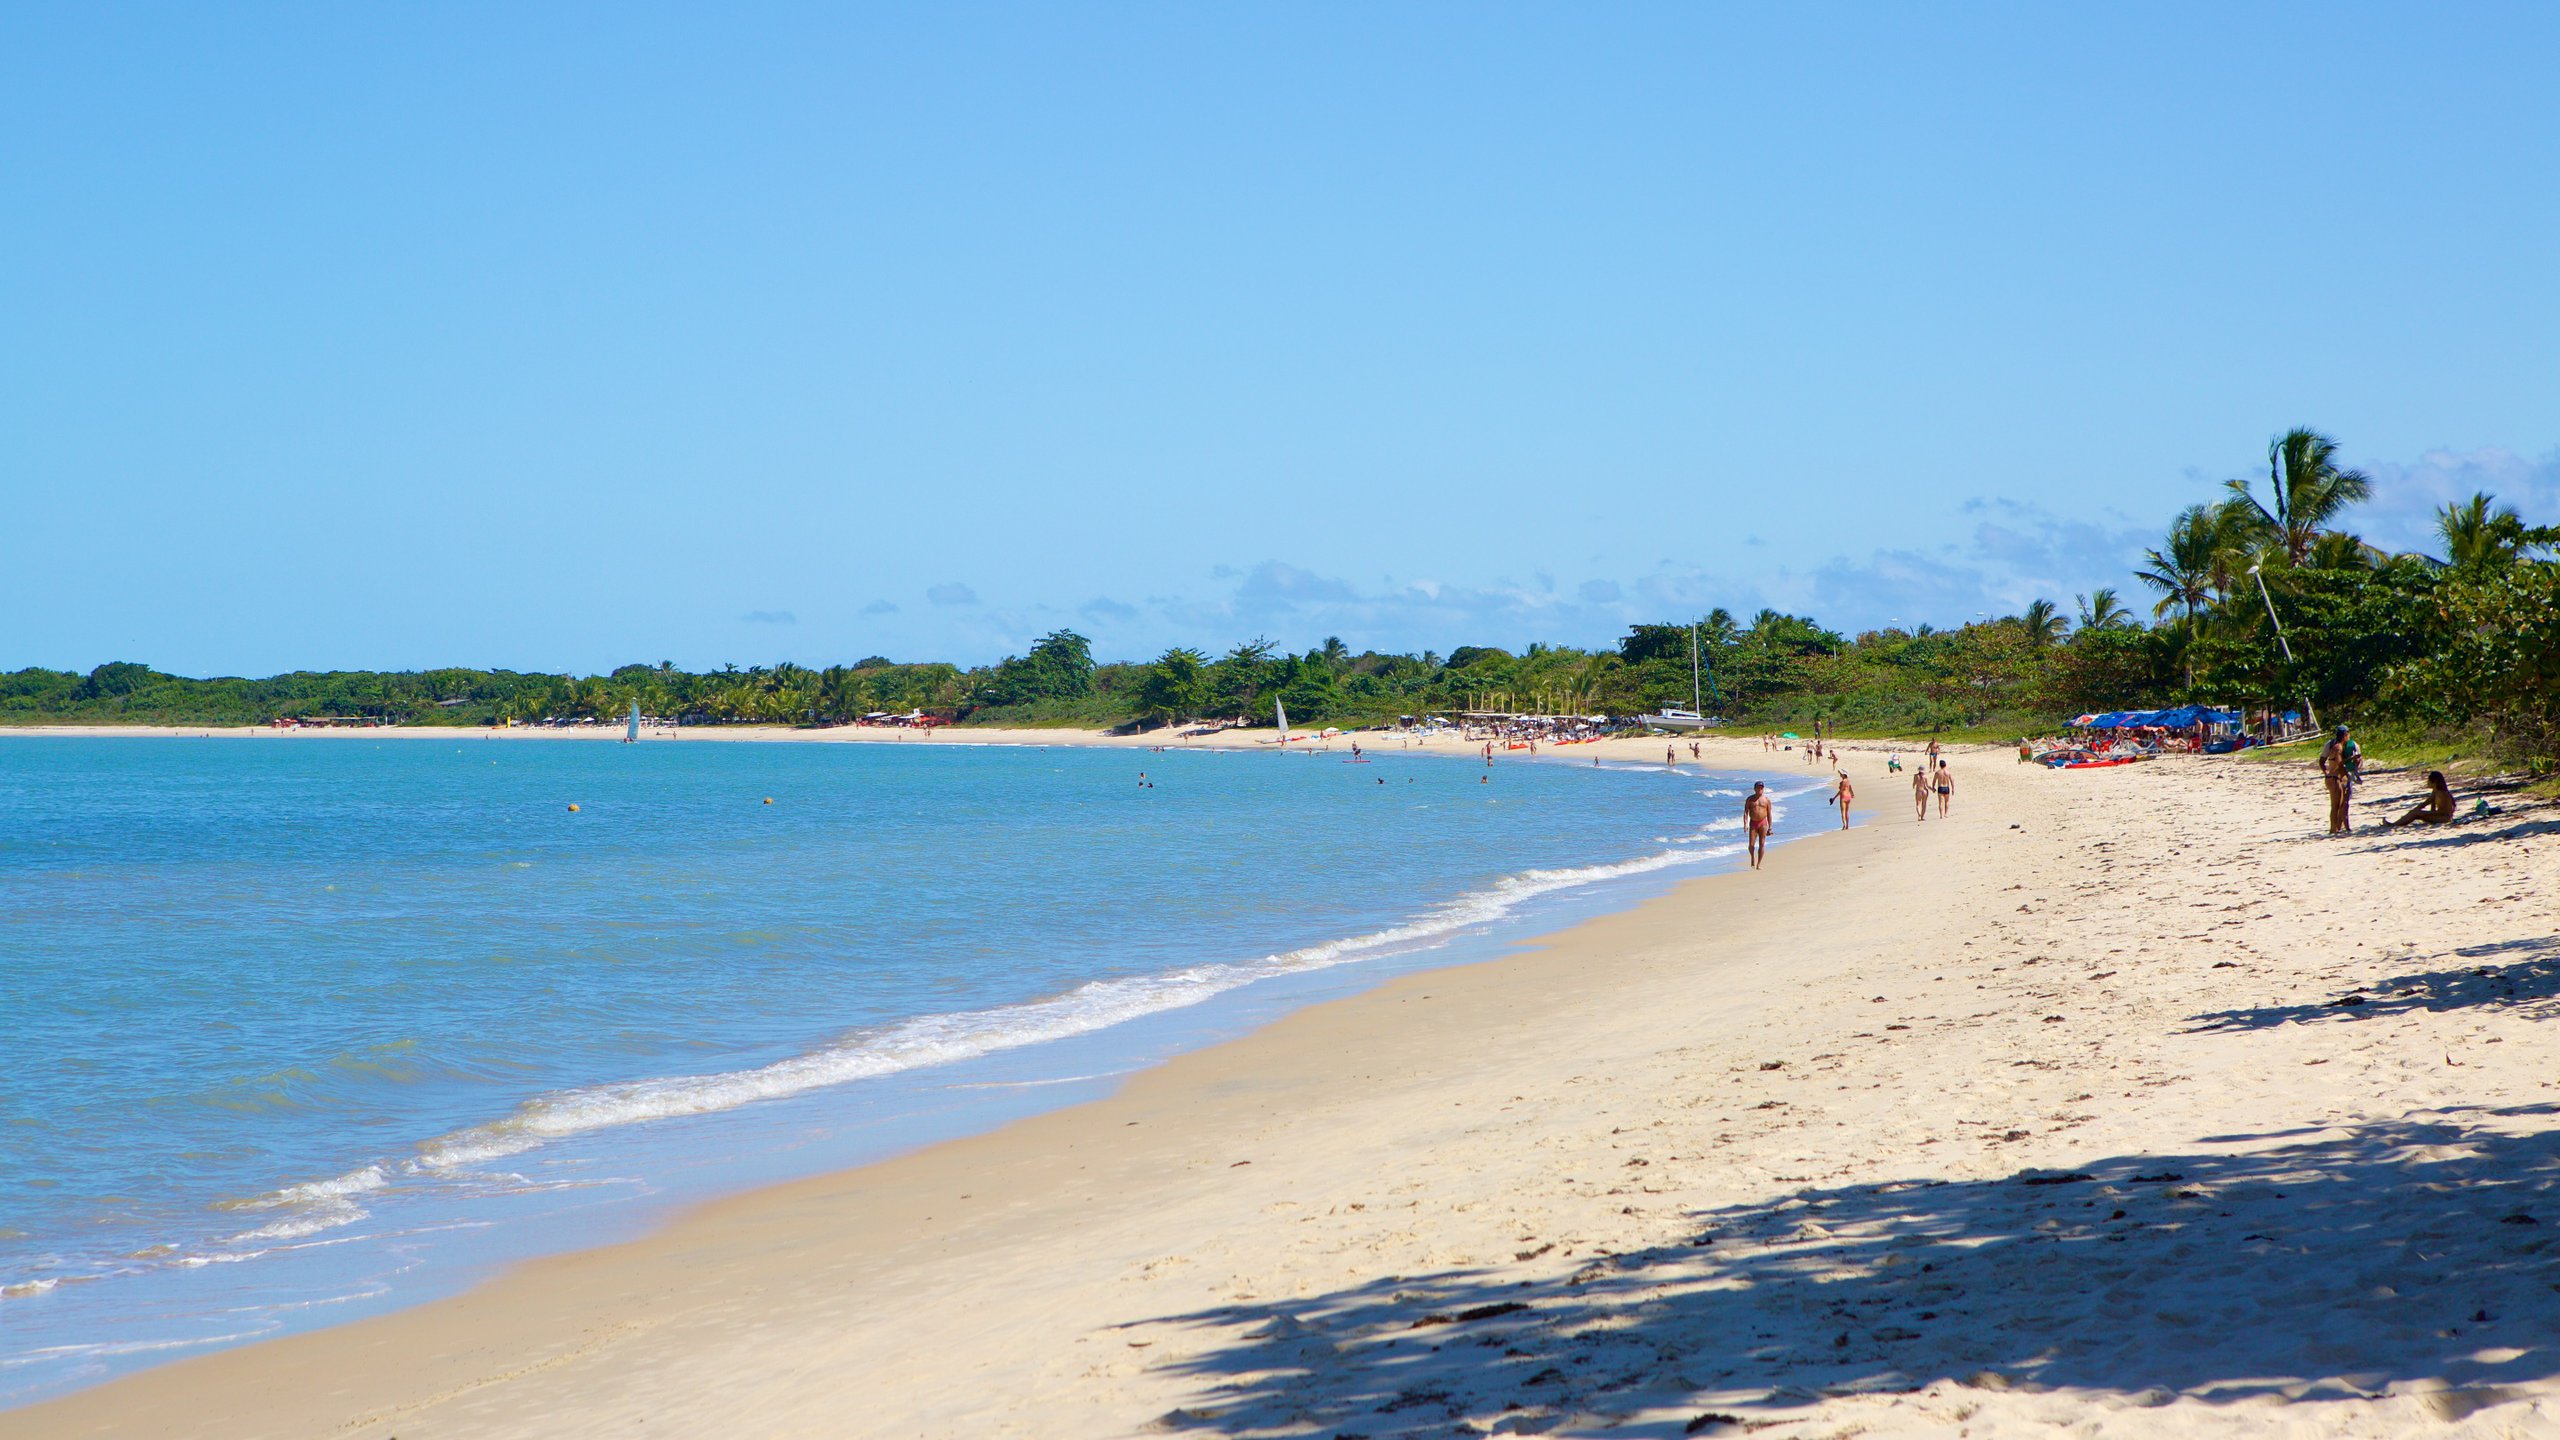 Vista ensolarada da Praia do Mutá em Porto Seguro, com areia branca, águas calmas e pessoas desfrutando do ambiente relaxante.